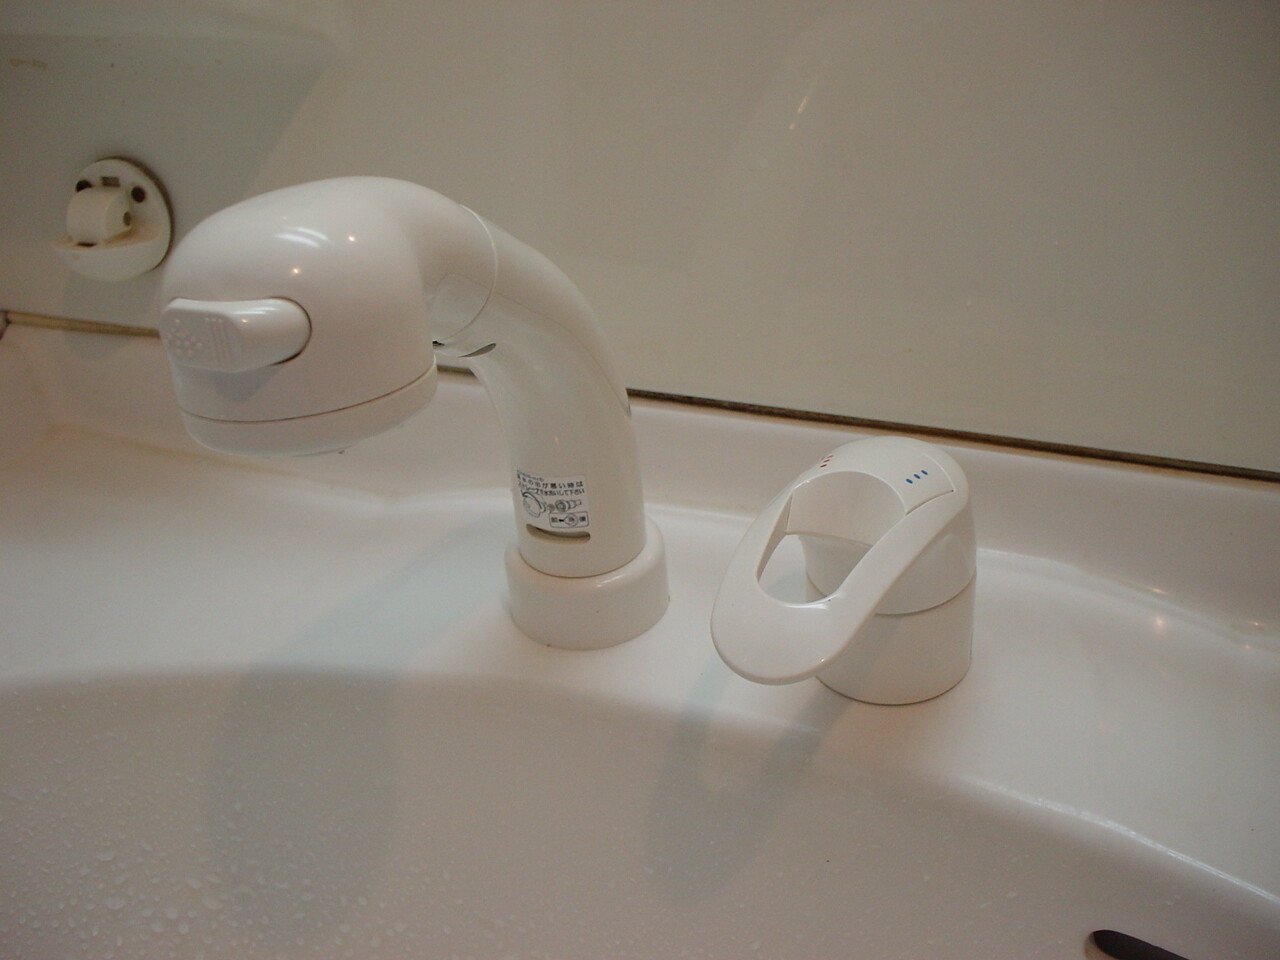 洗面化粧台シャンプー水栓の故障で、今回は低価格なシングルレバー混合栓に取替